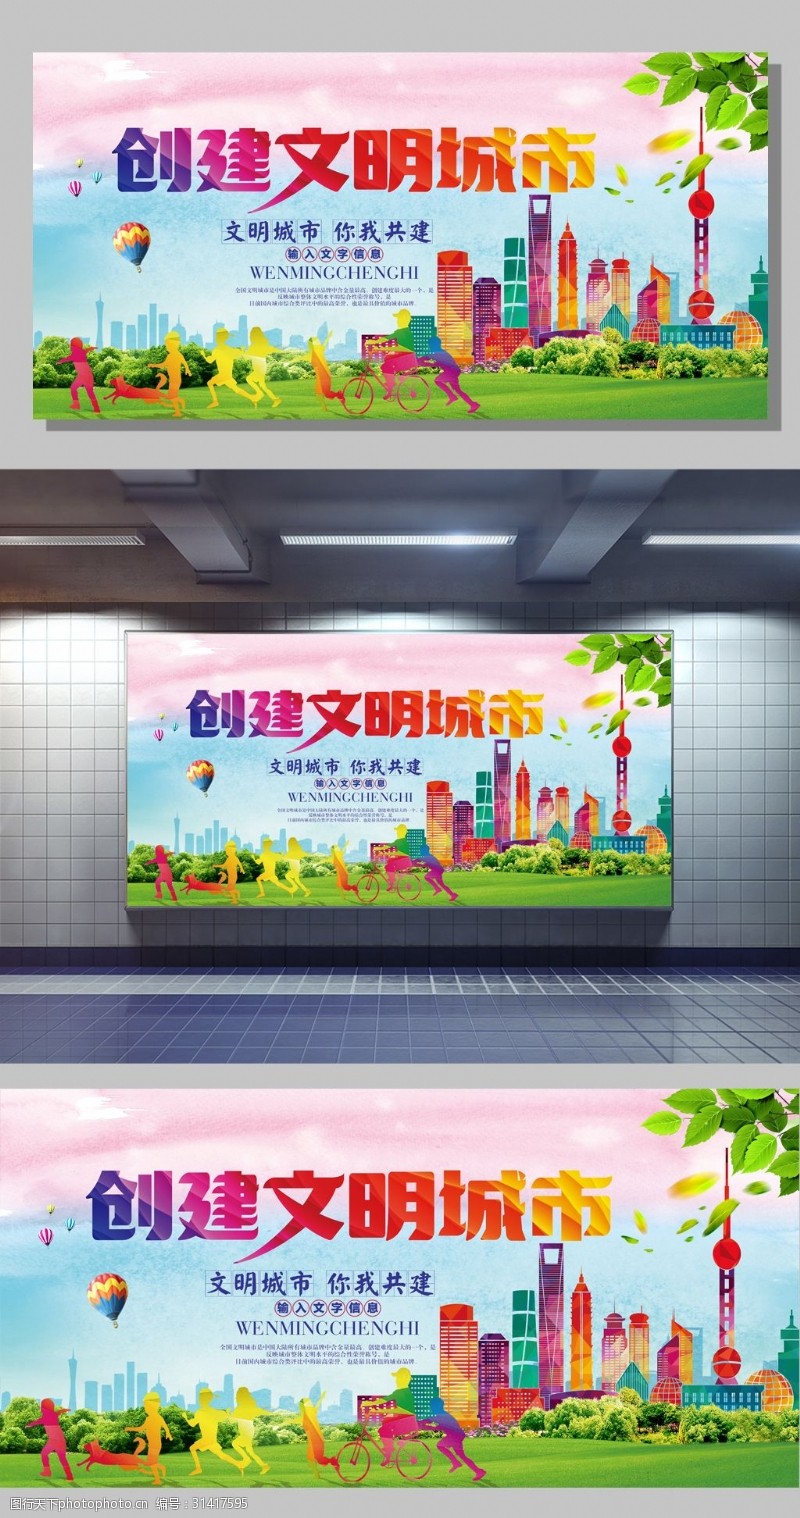 保建创建文明城市文明环保公益宣传广告海报展板